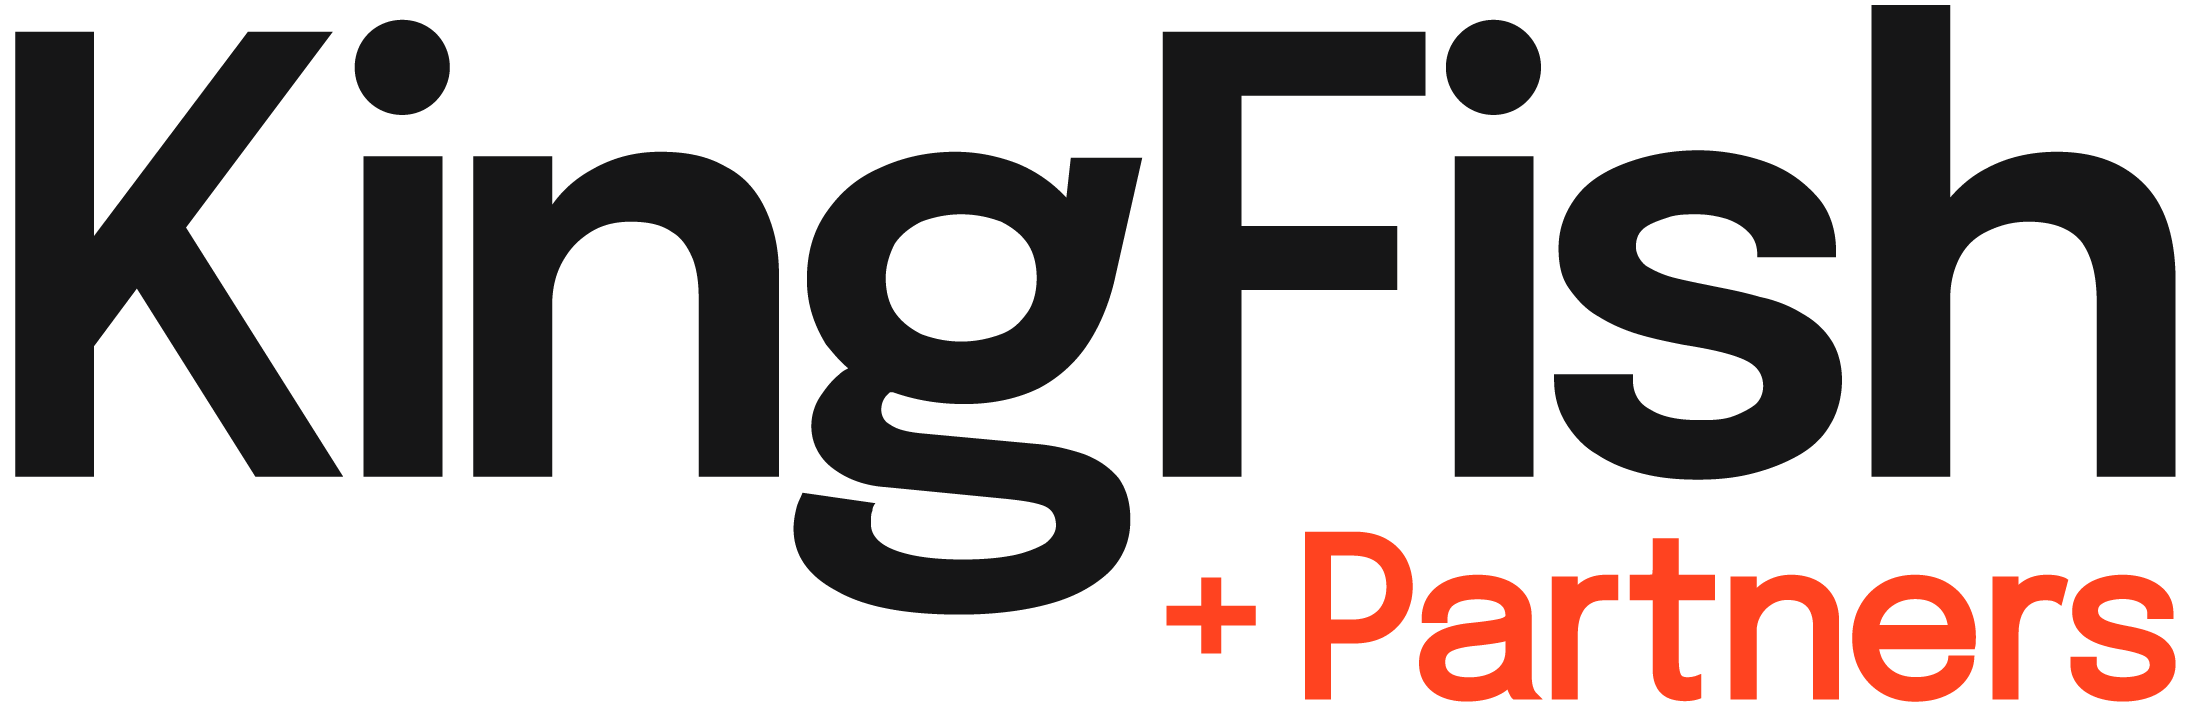 kingfish-partners-text-logo-footer-v4